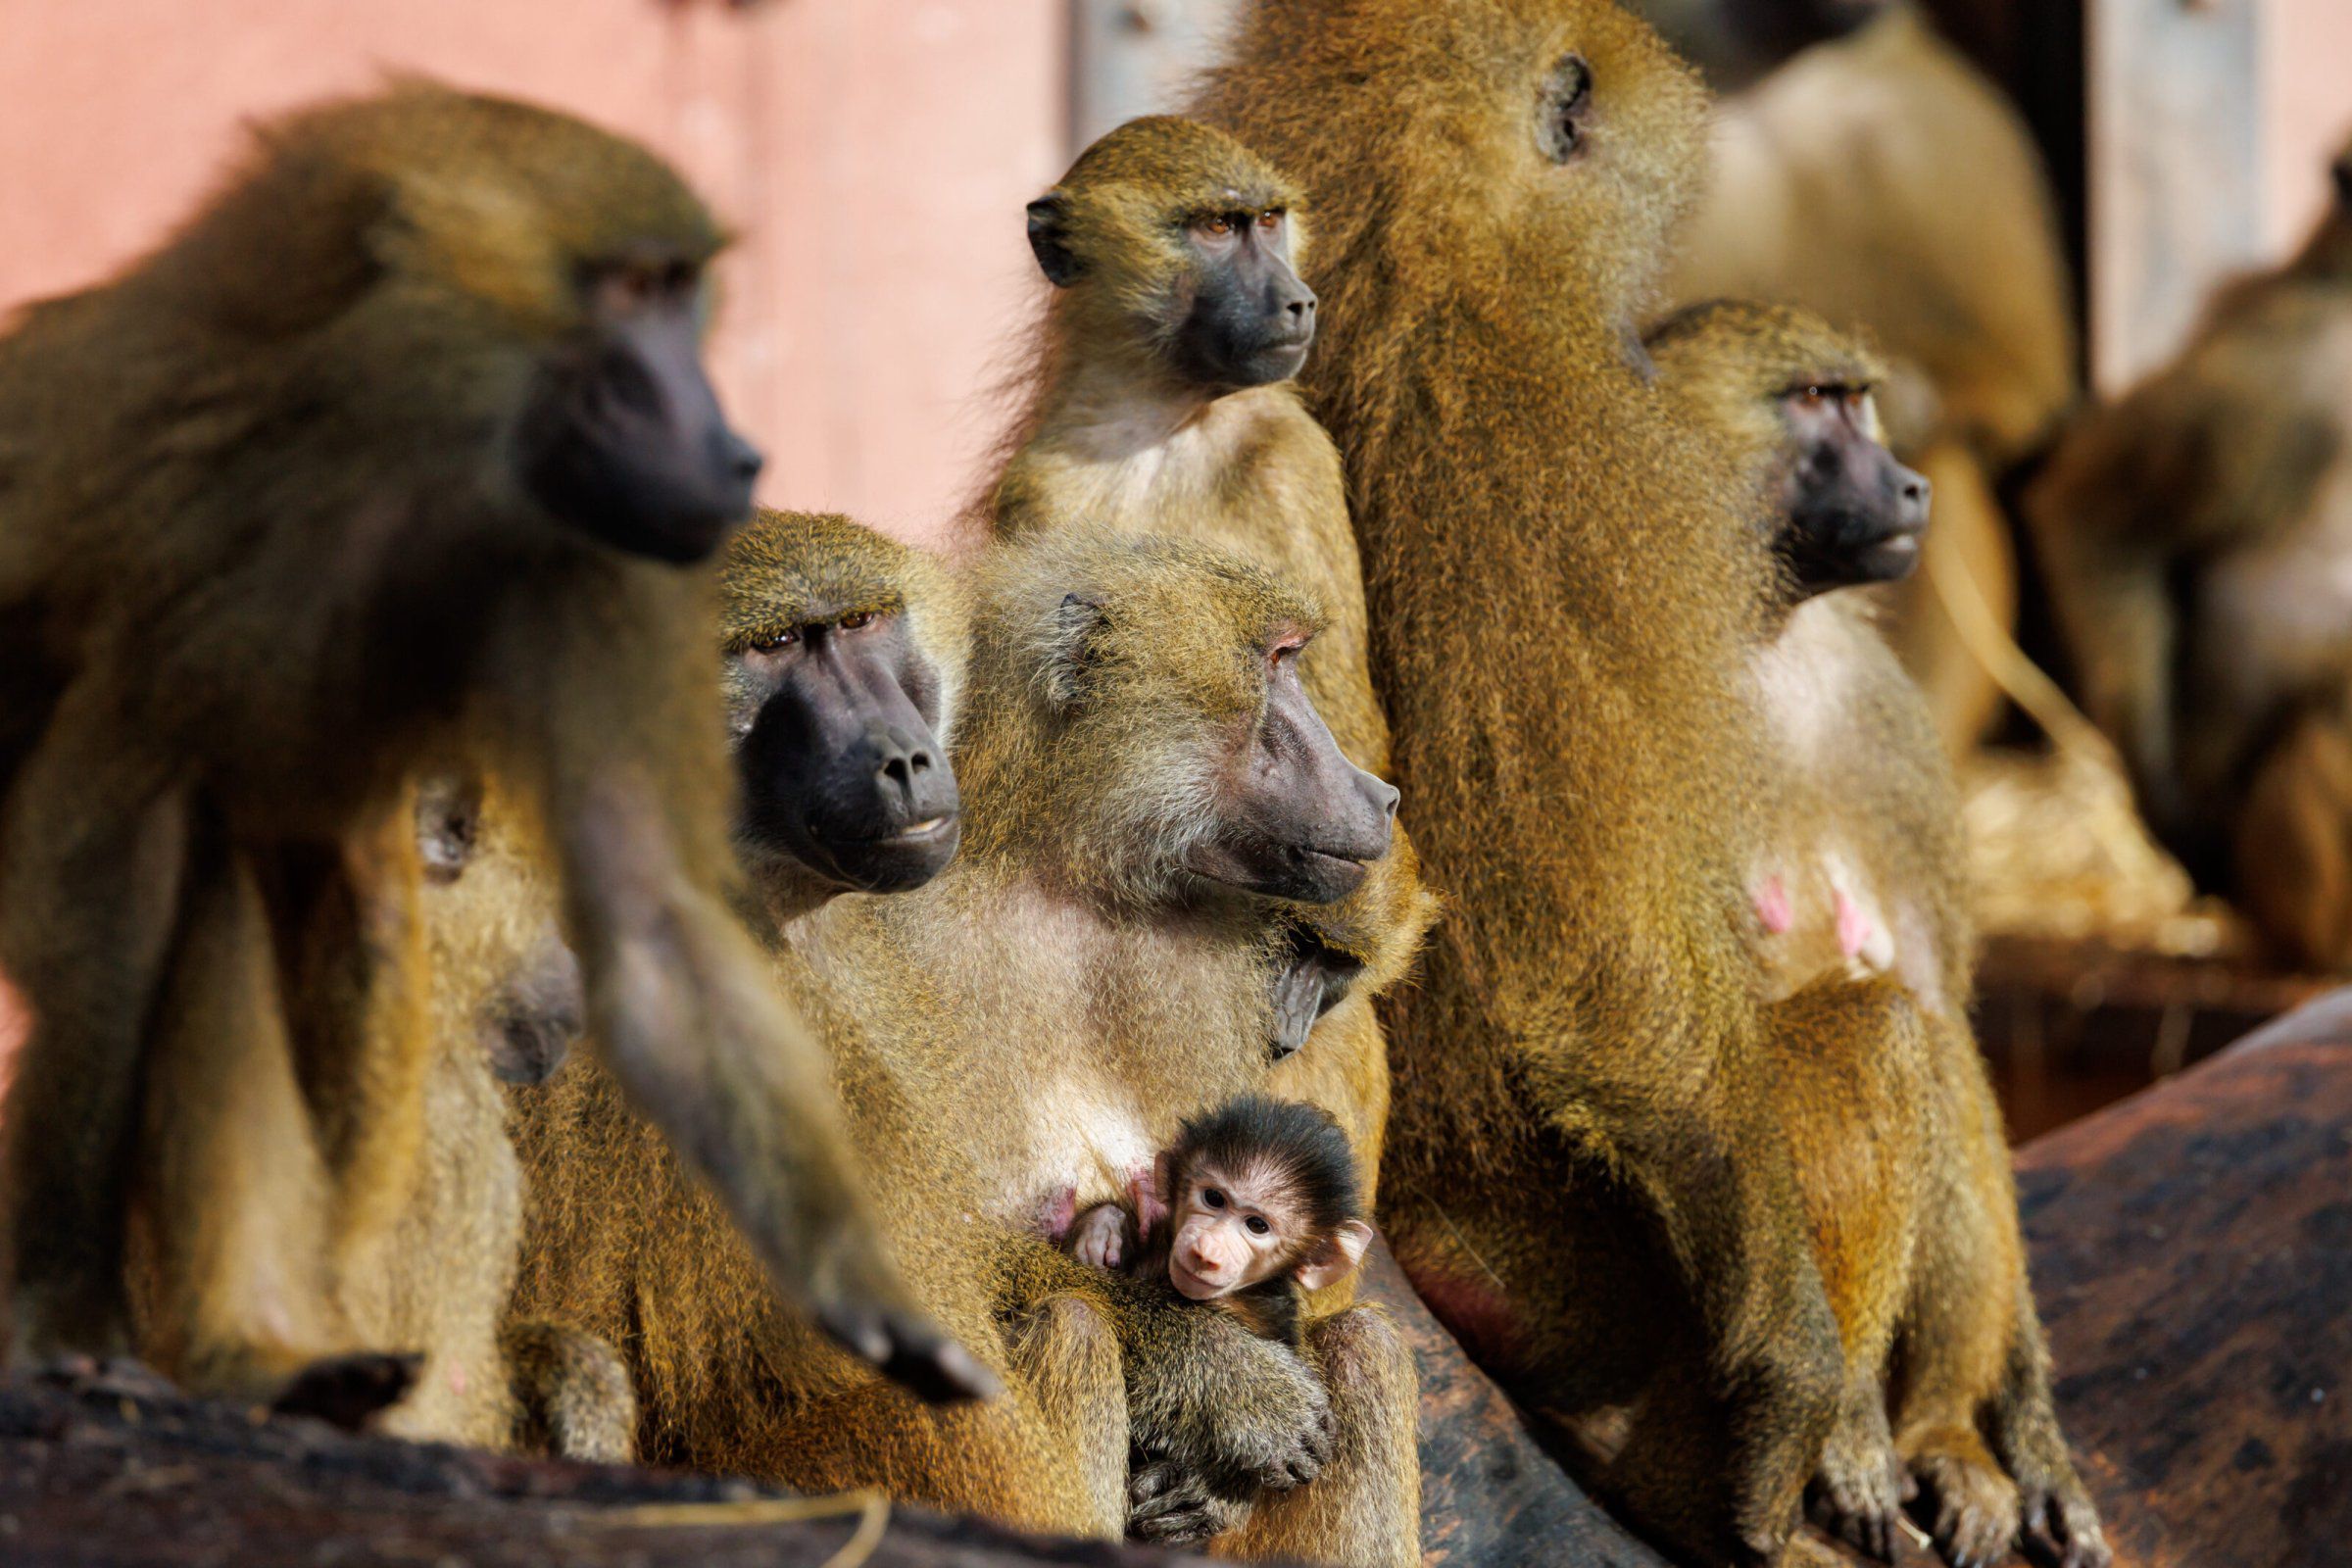 Tötung von Affen in Nürnberg: Ein tierfeindliches System